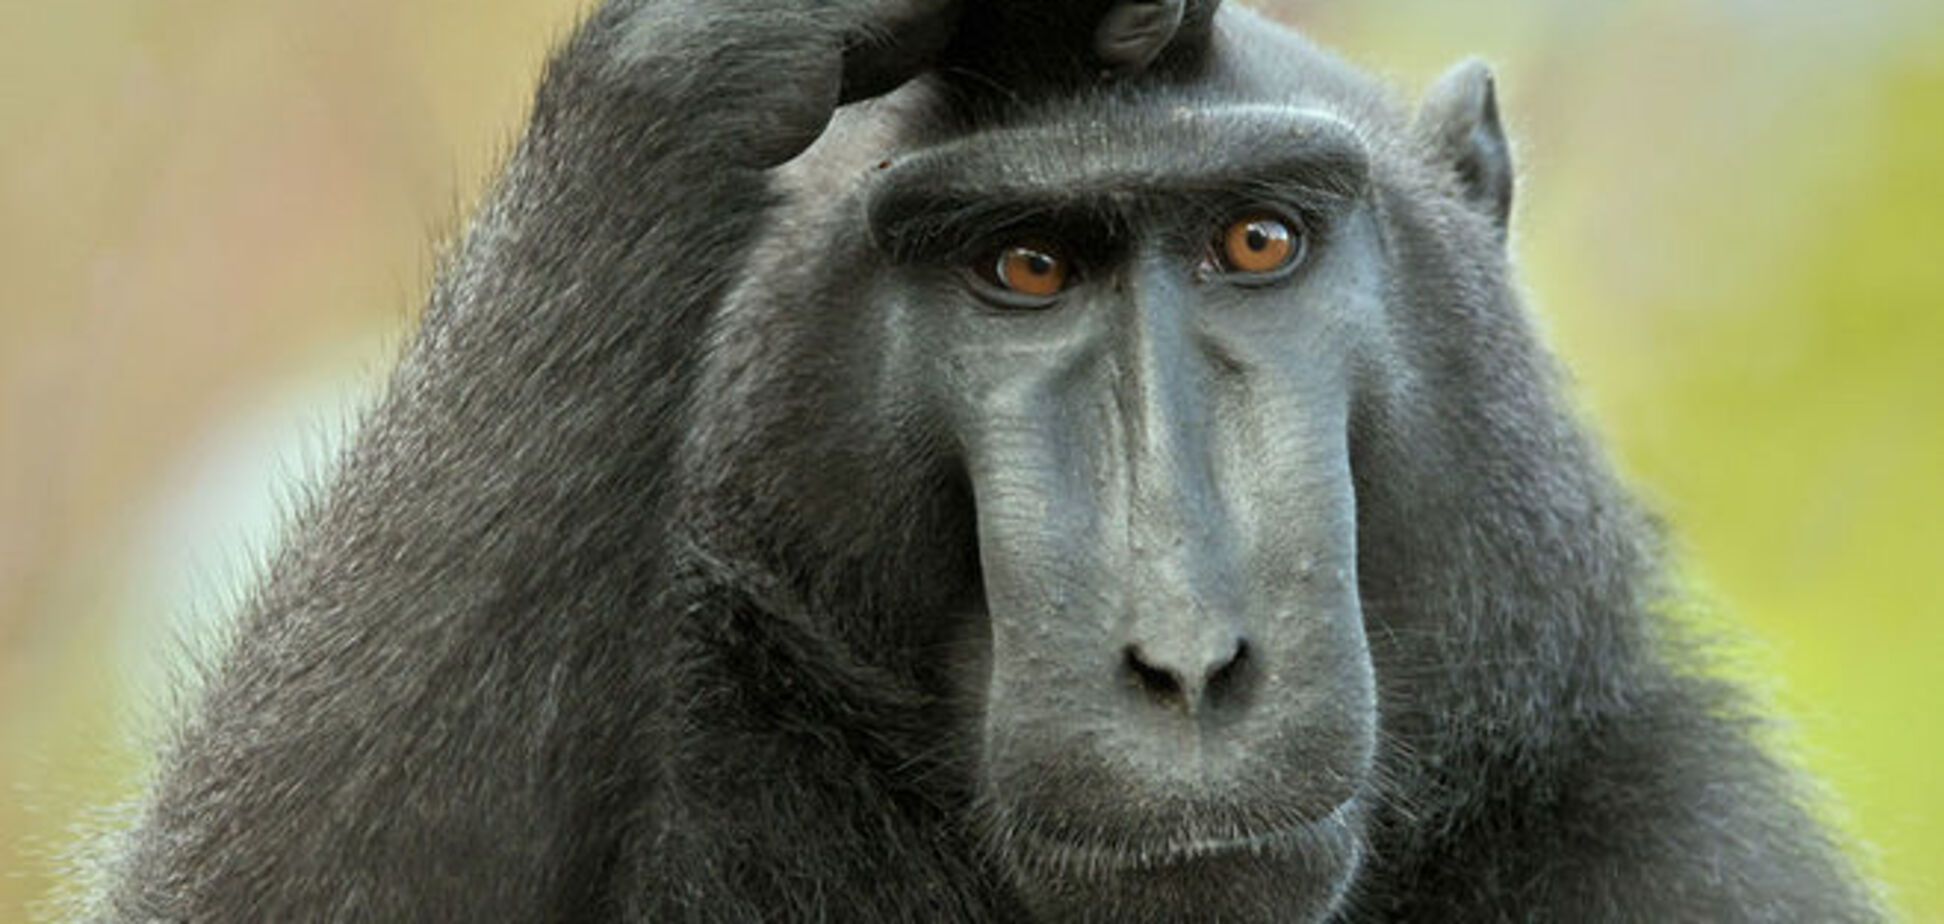 Виток эволюции: ученые объяснили отличия тела человека и обезьяны